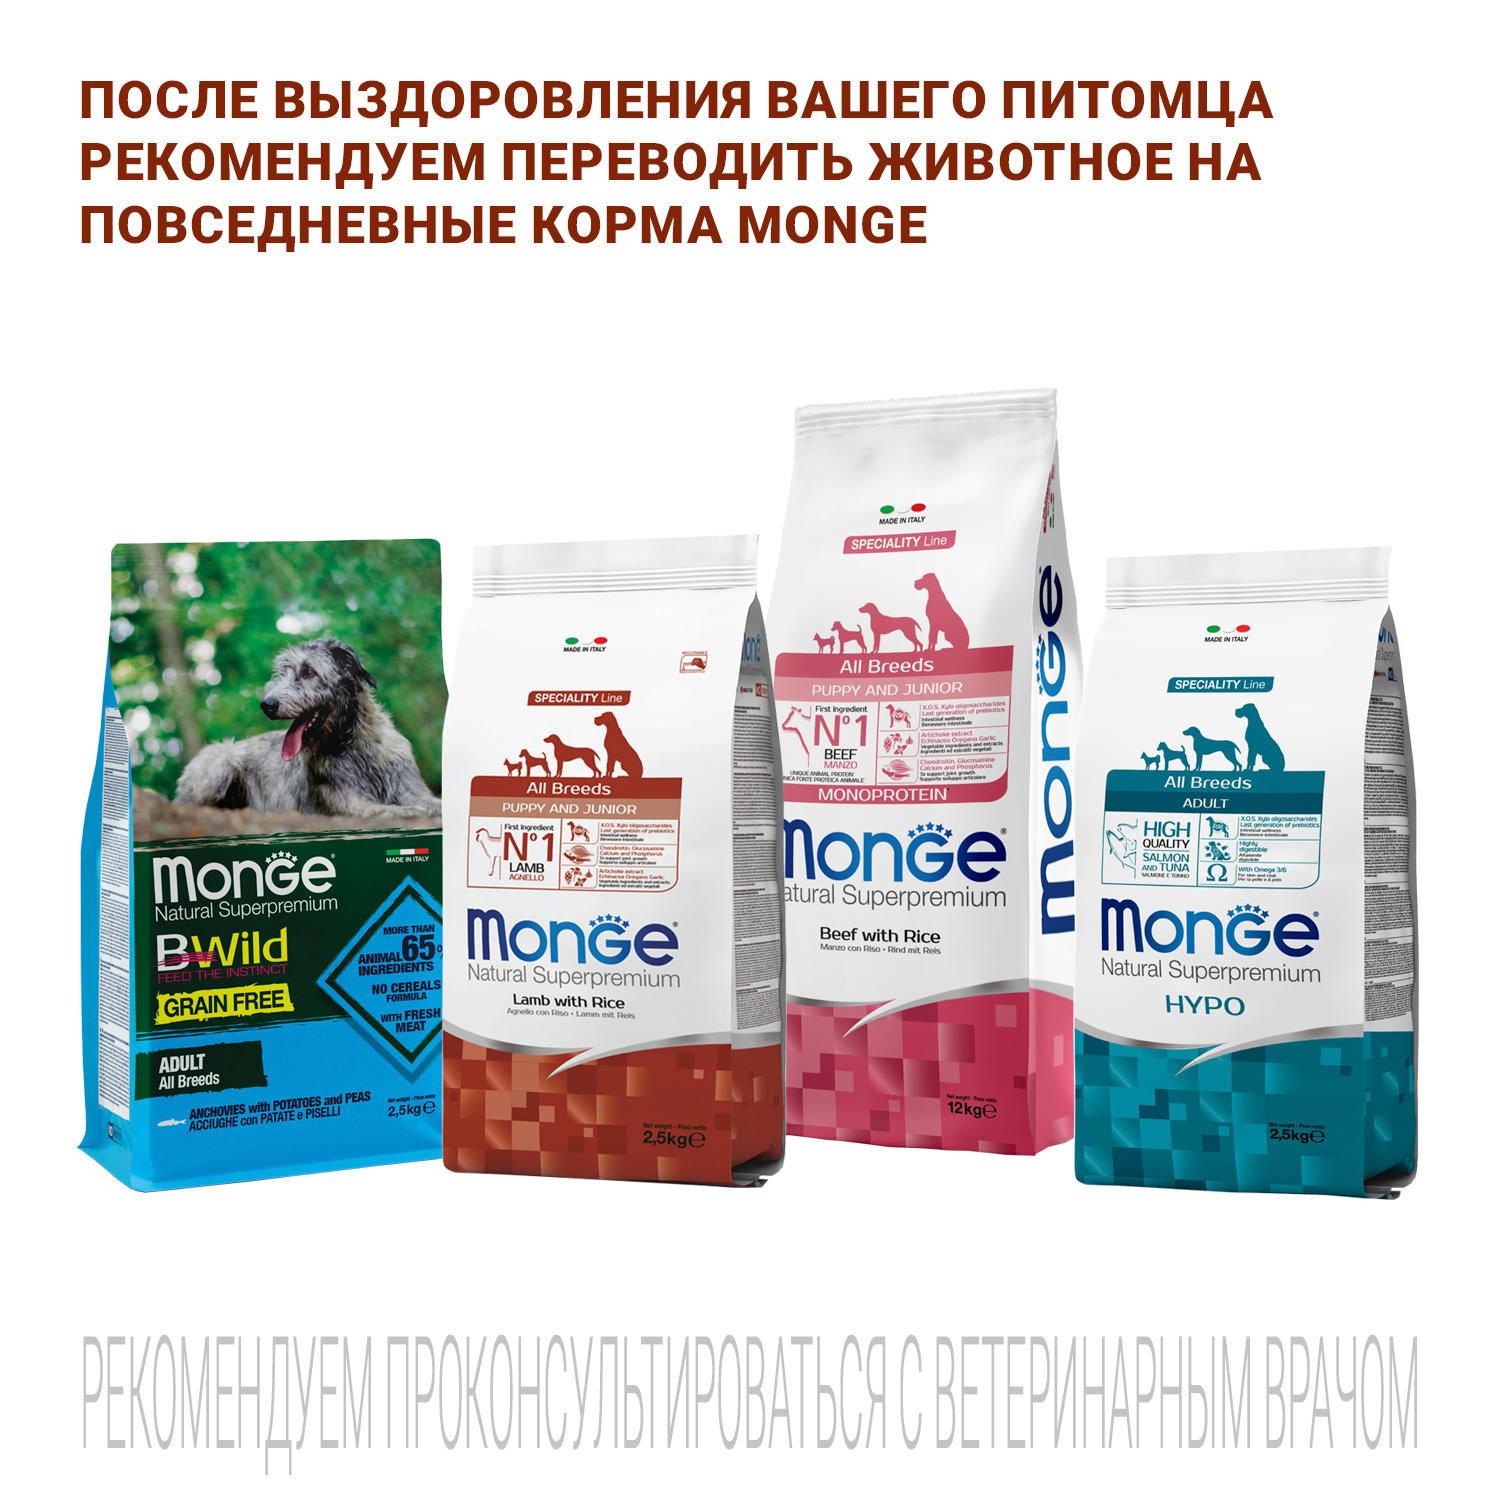 Ветеринарная диета Monge VetSolution Dog Renal and Oxalate Ренал и Оксалат для собак при ХПН 2 кг